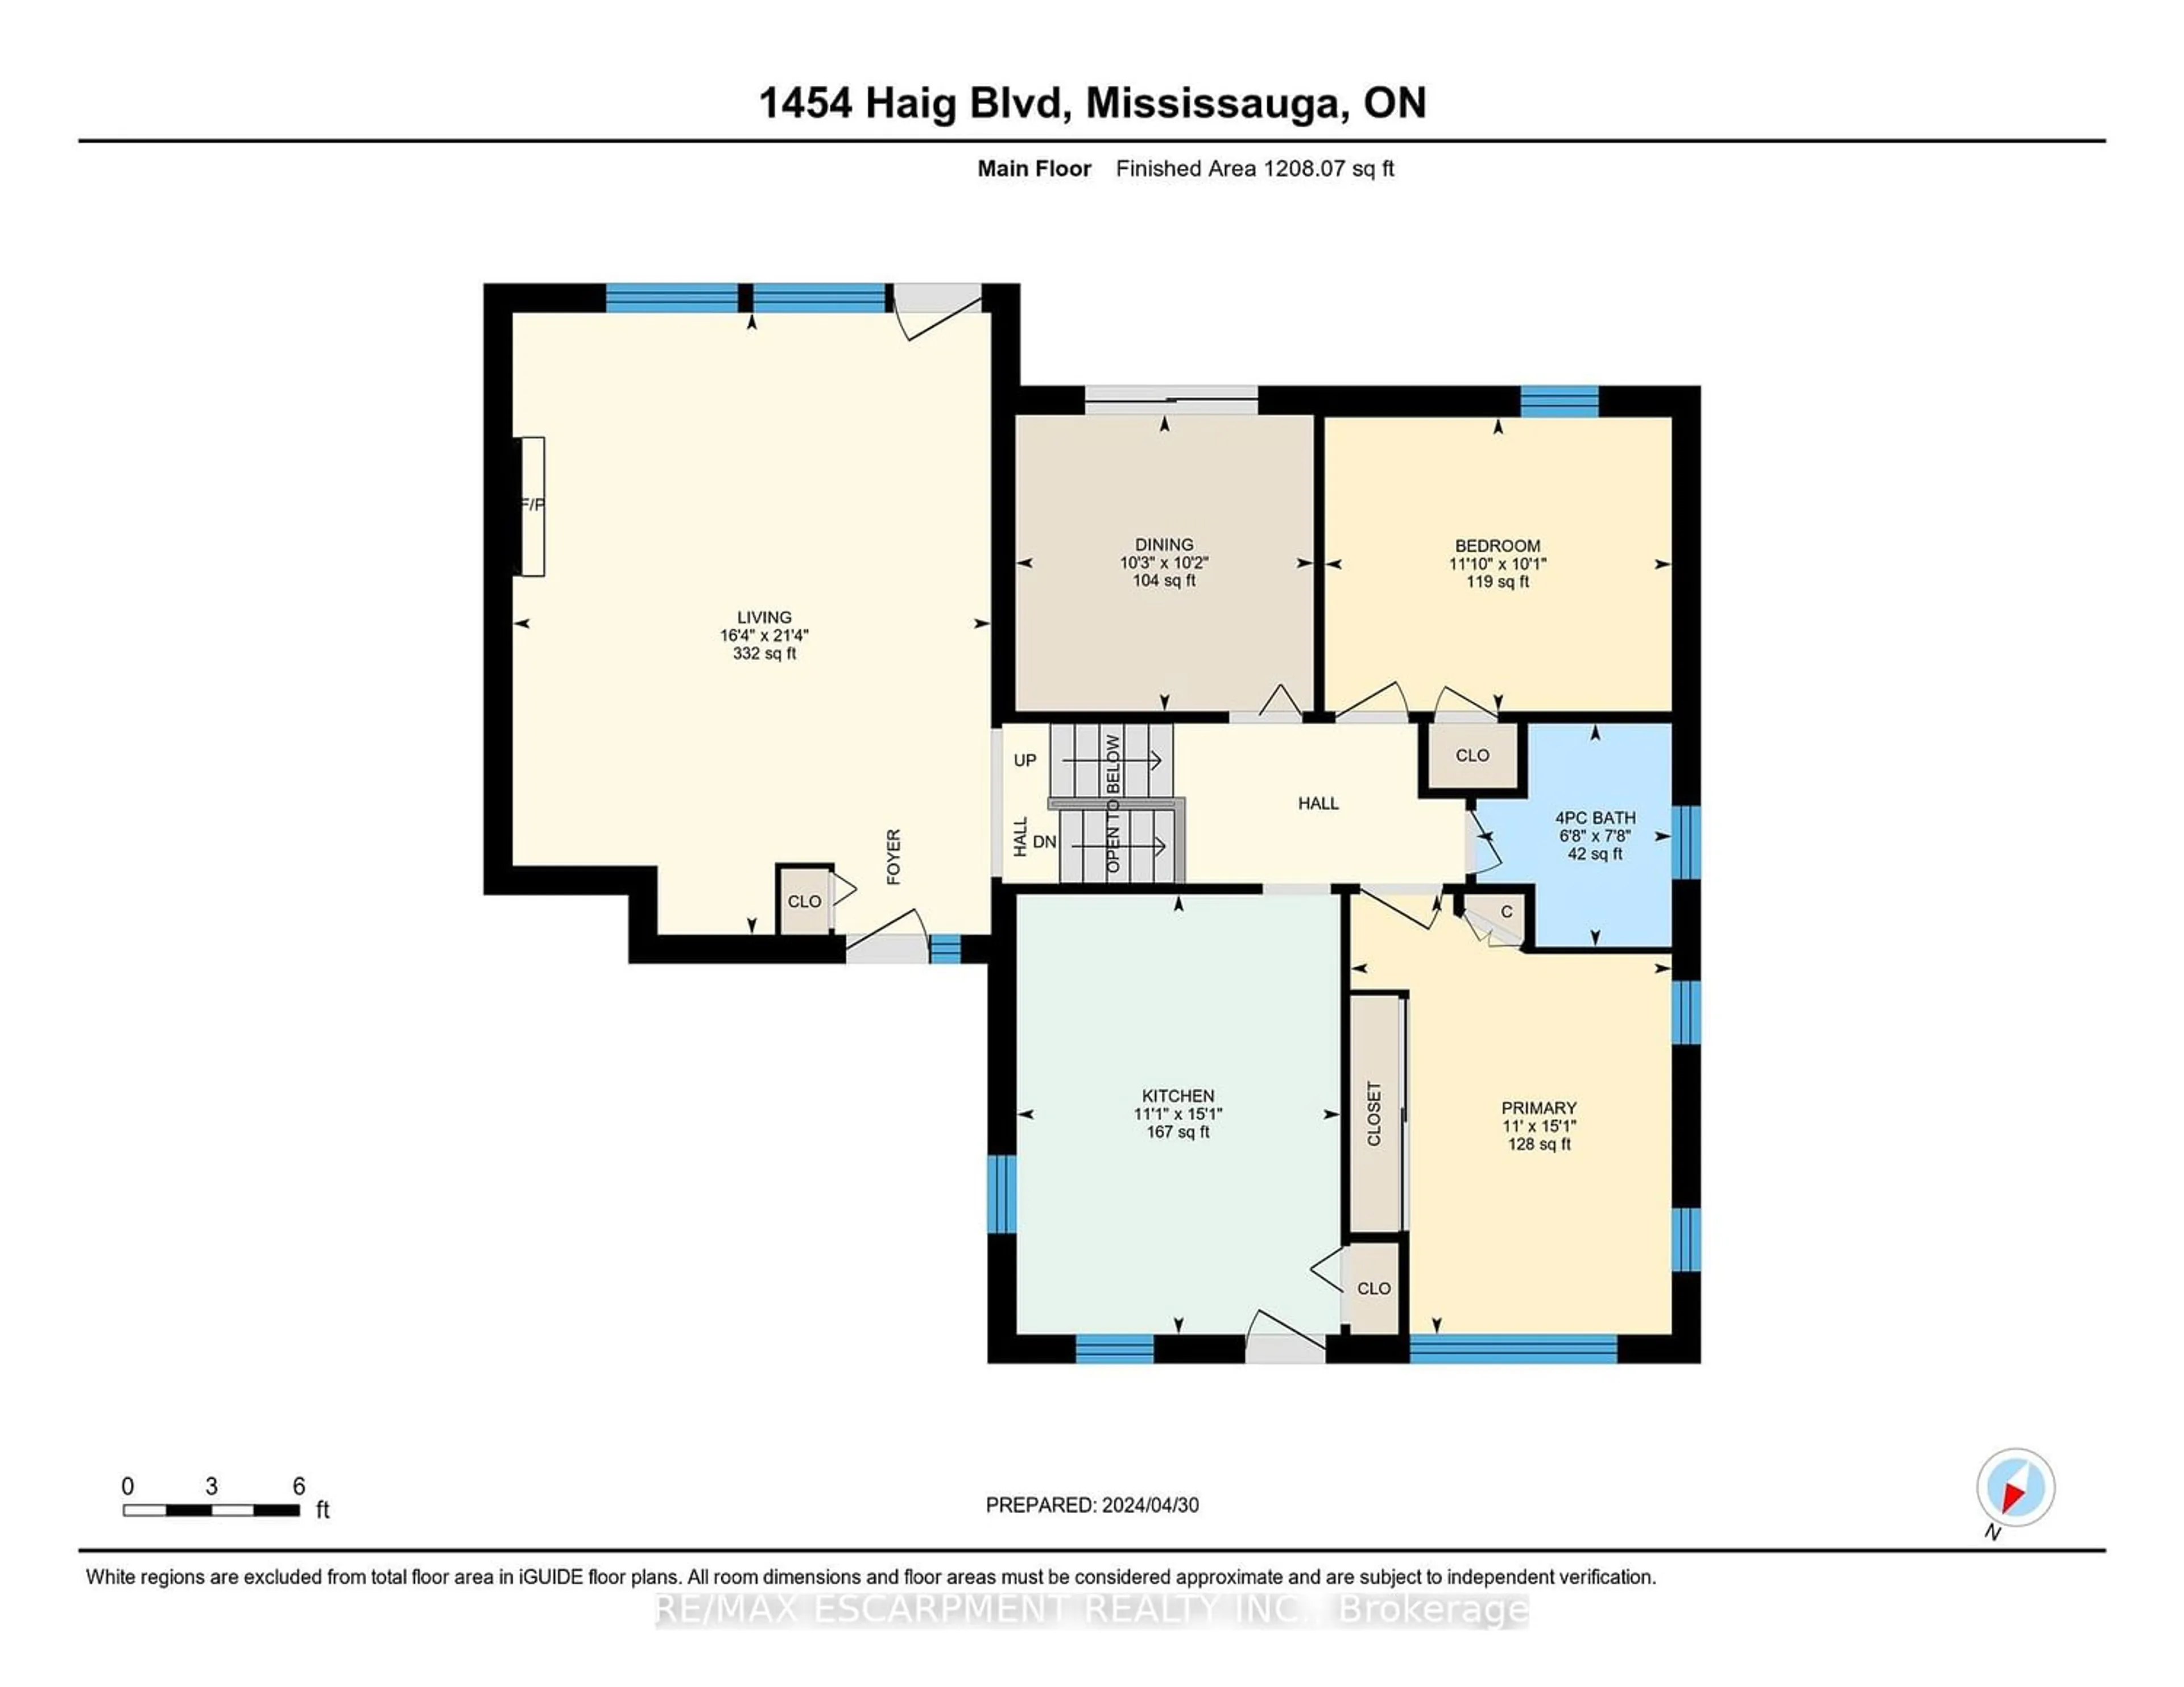 Floor plan for 1454 Haig Blvd, Mississauga Ontario L5E 2N1